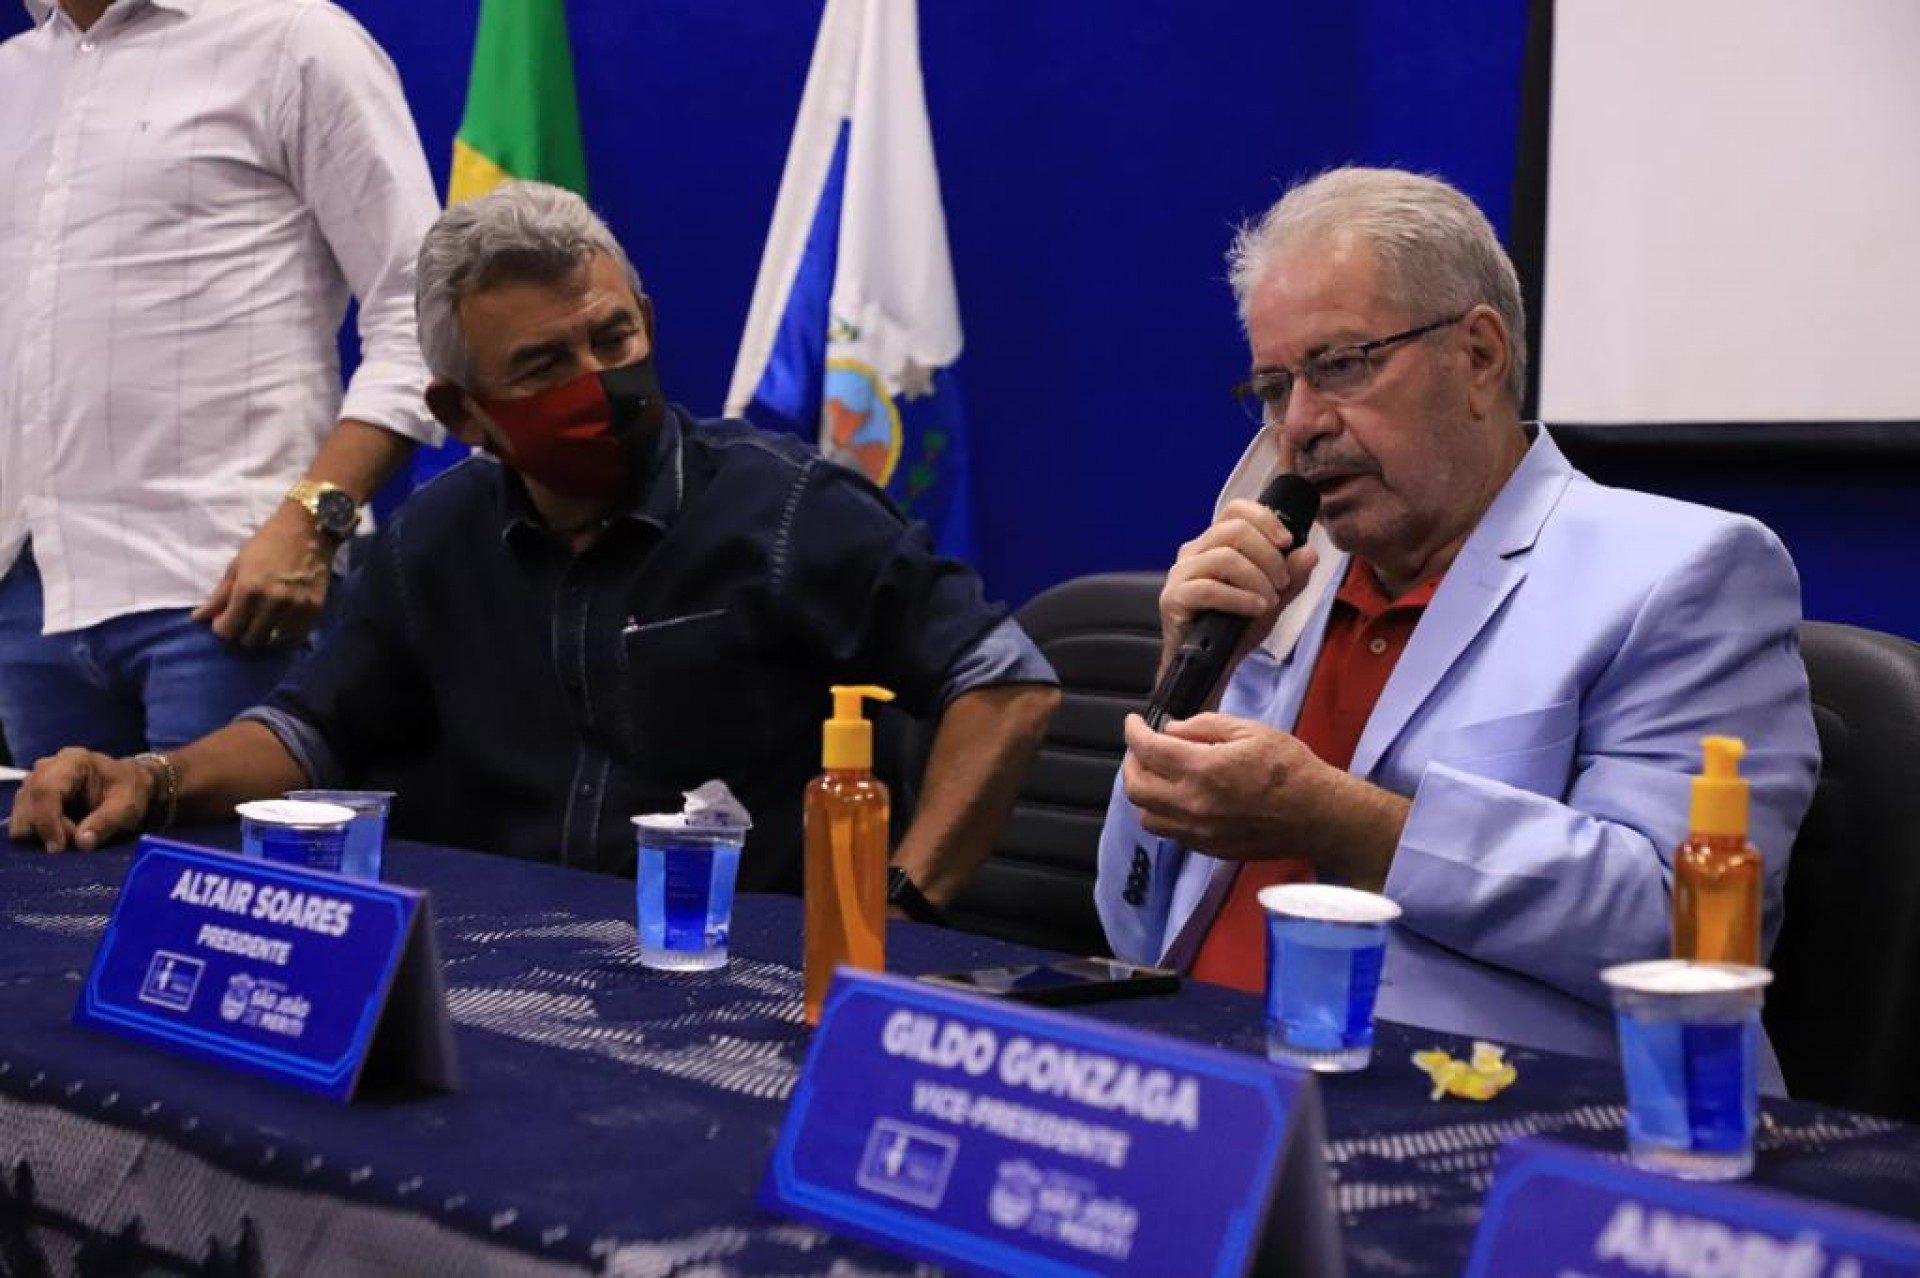 O novo presidente do instituto, Altair Soares, acompanhado do prefeito de Meriti, Dr. João - Divulgação